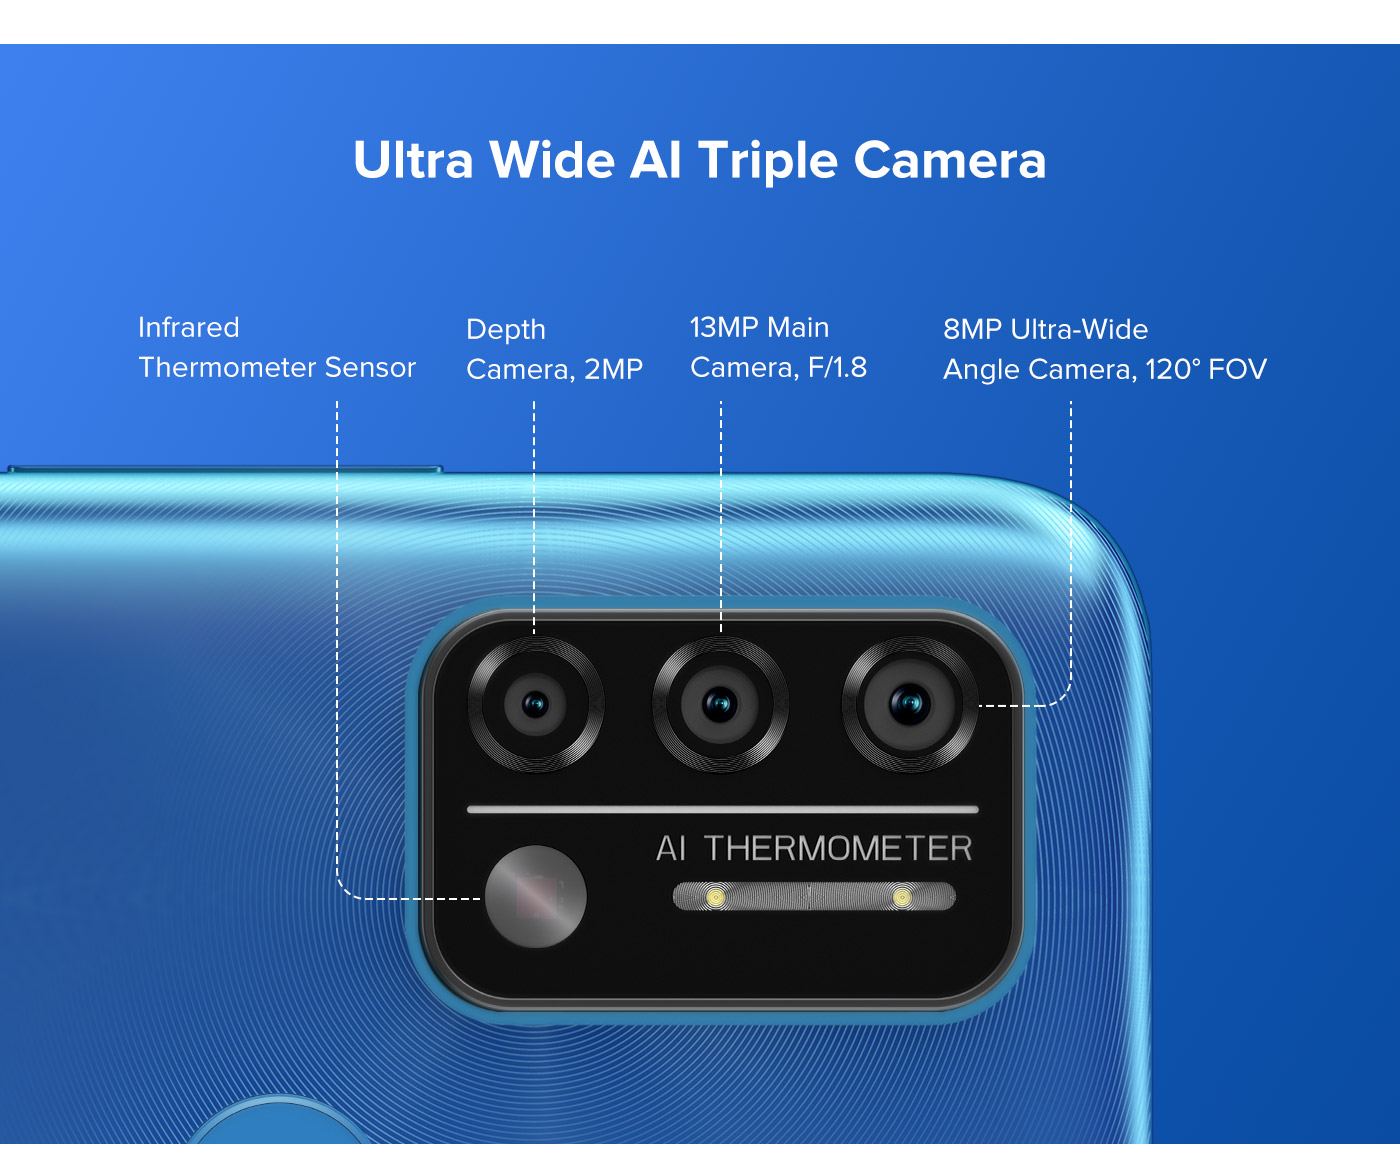 รูปภาพเพิ่มเติมเกี่ยวกับ UMIDIGI A9 (3GB+64GB)โทรศัพท์มือถือ  จอกว้าง 6.53" FHD+แบตฯ 5150mAh  กล้องหลัง 3 ตัว 13MP